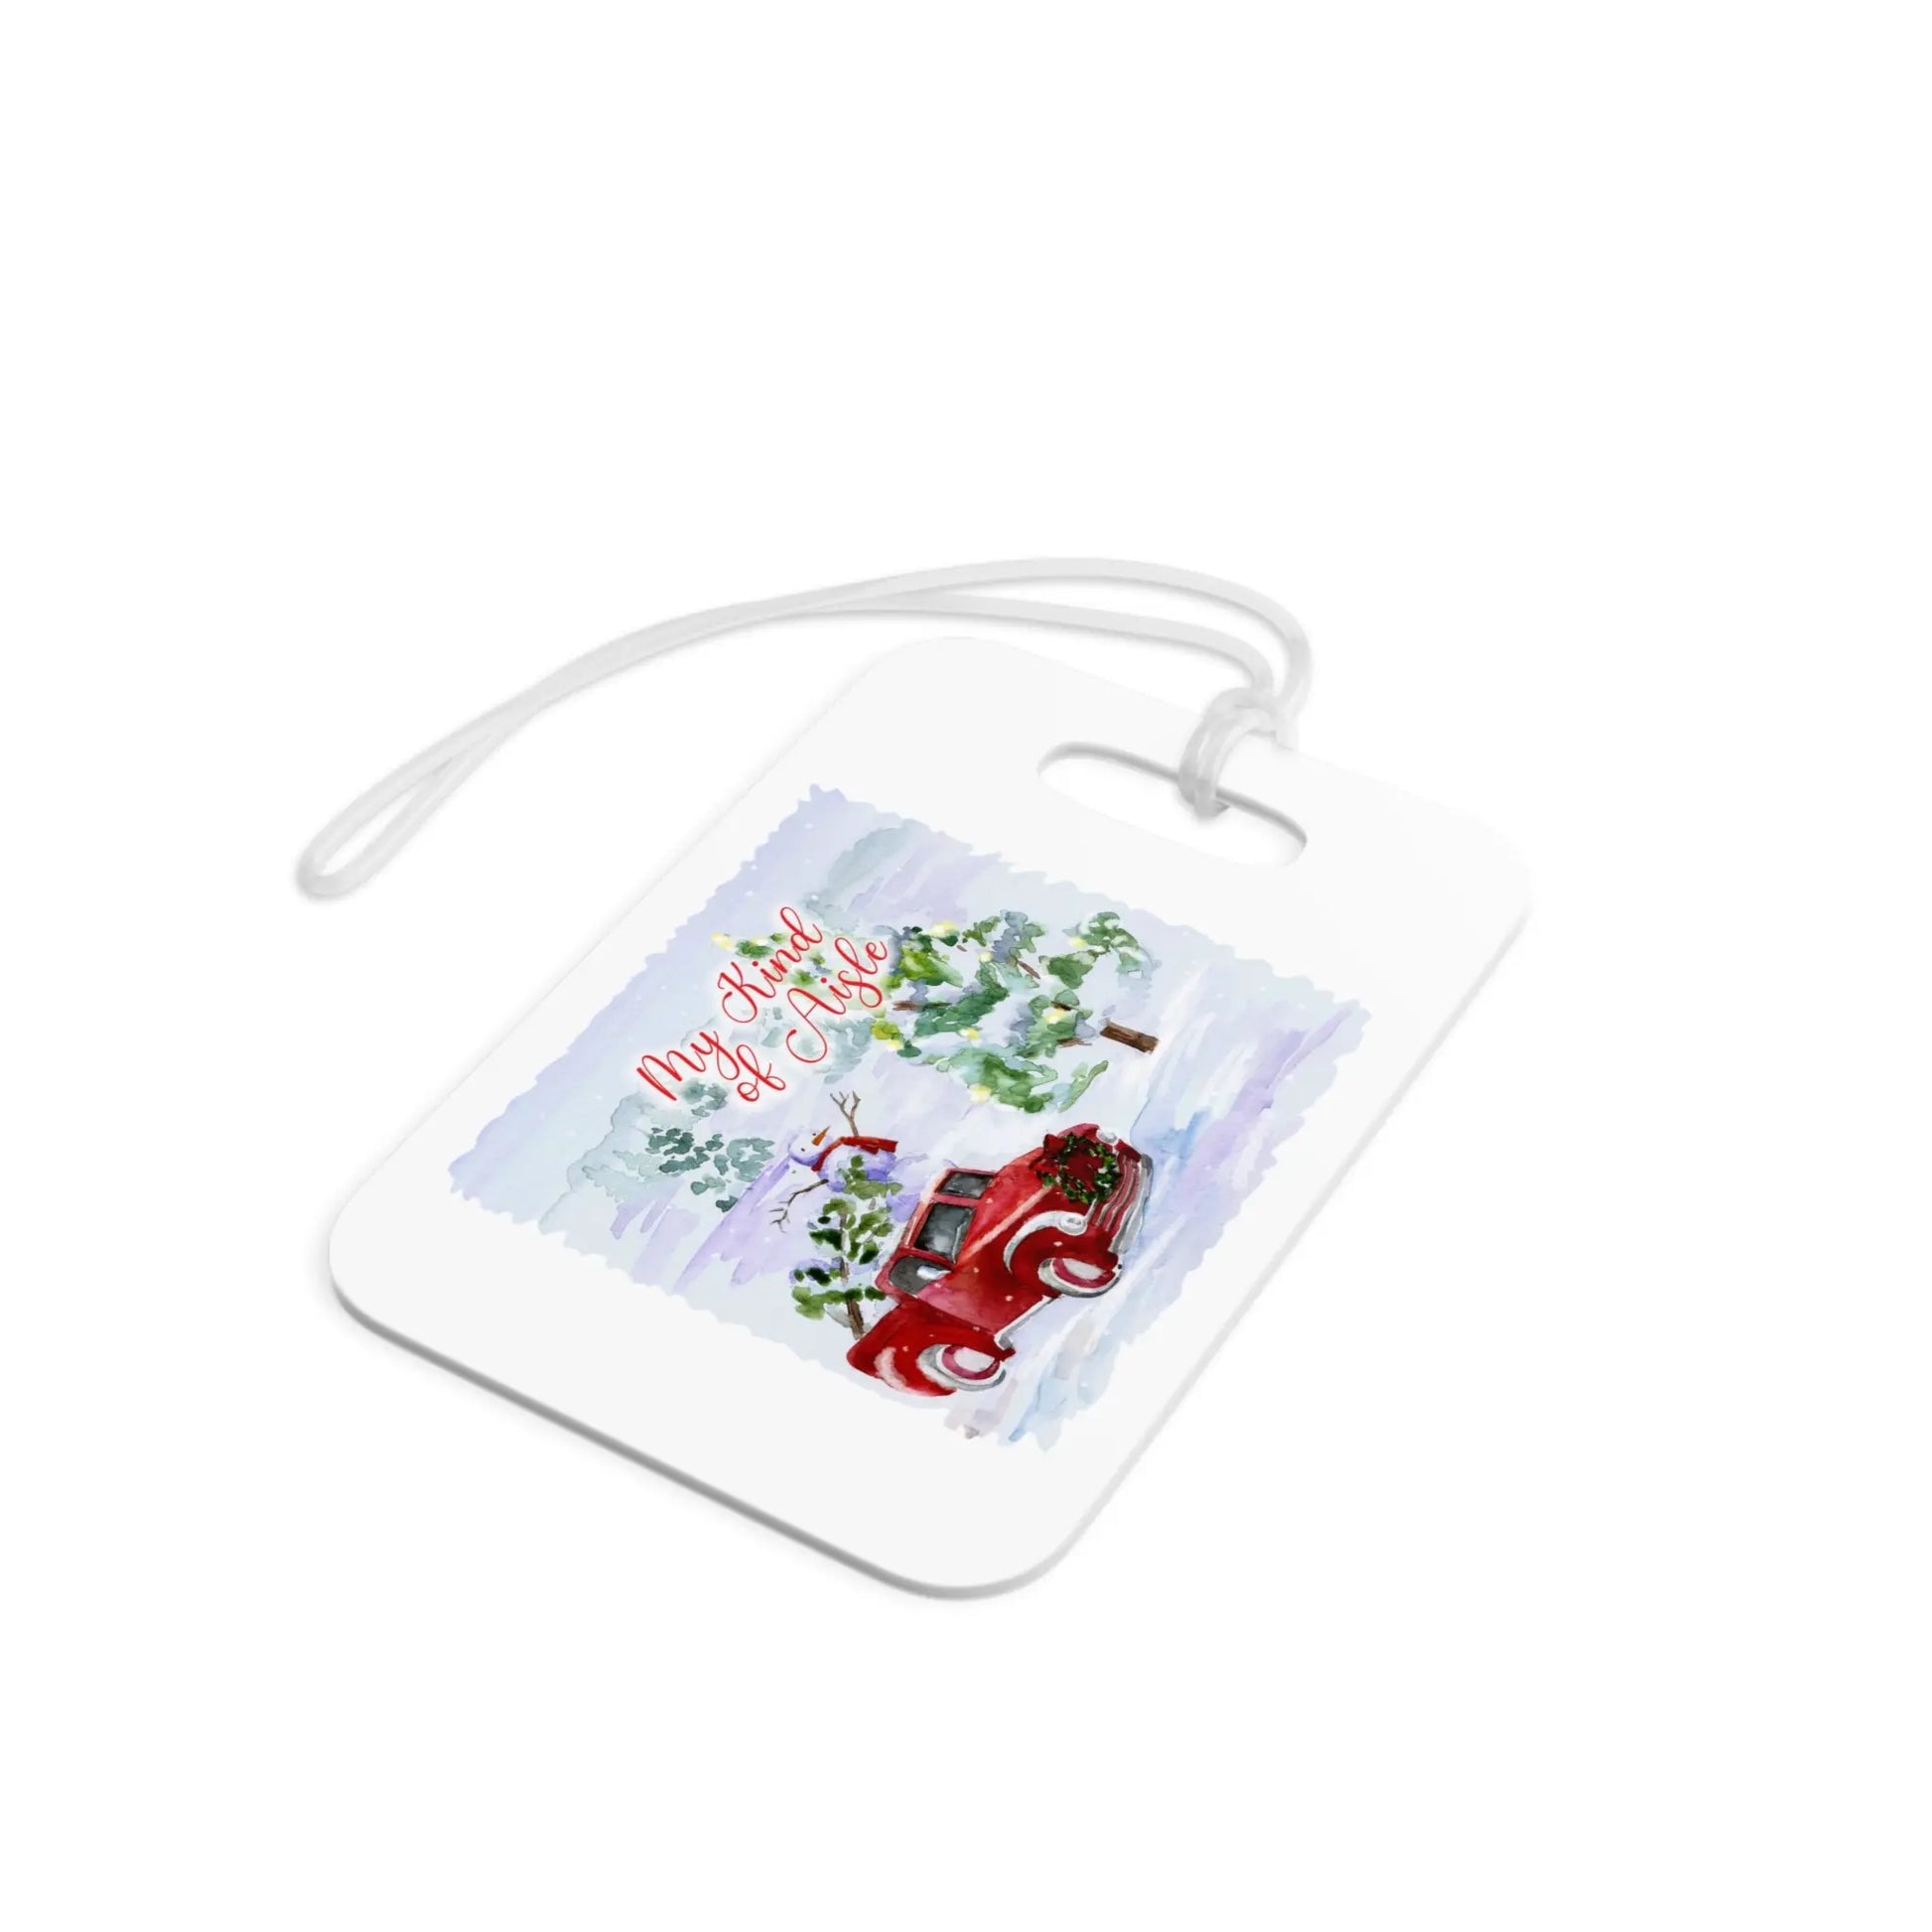 Empowerment Luggage Tag, Inspiring Women's Christmas Tree Farm Travel Accessory Printify